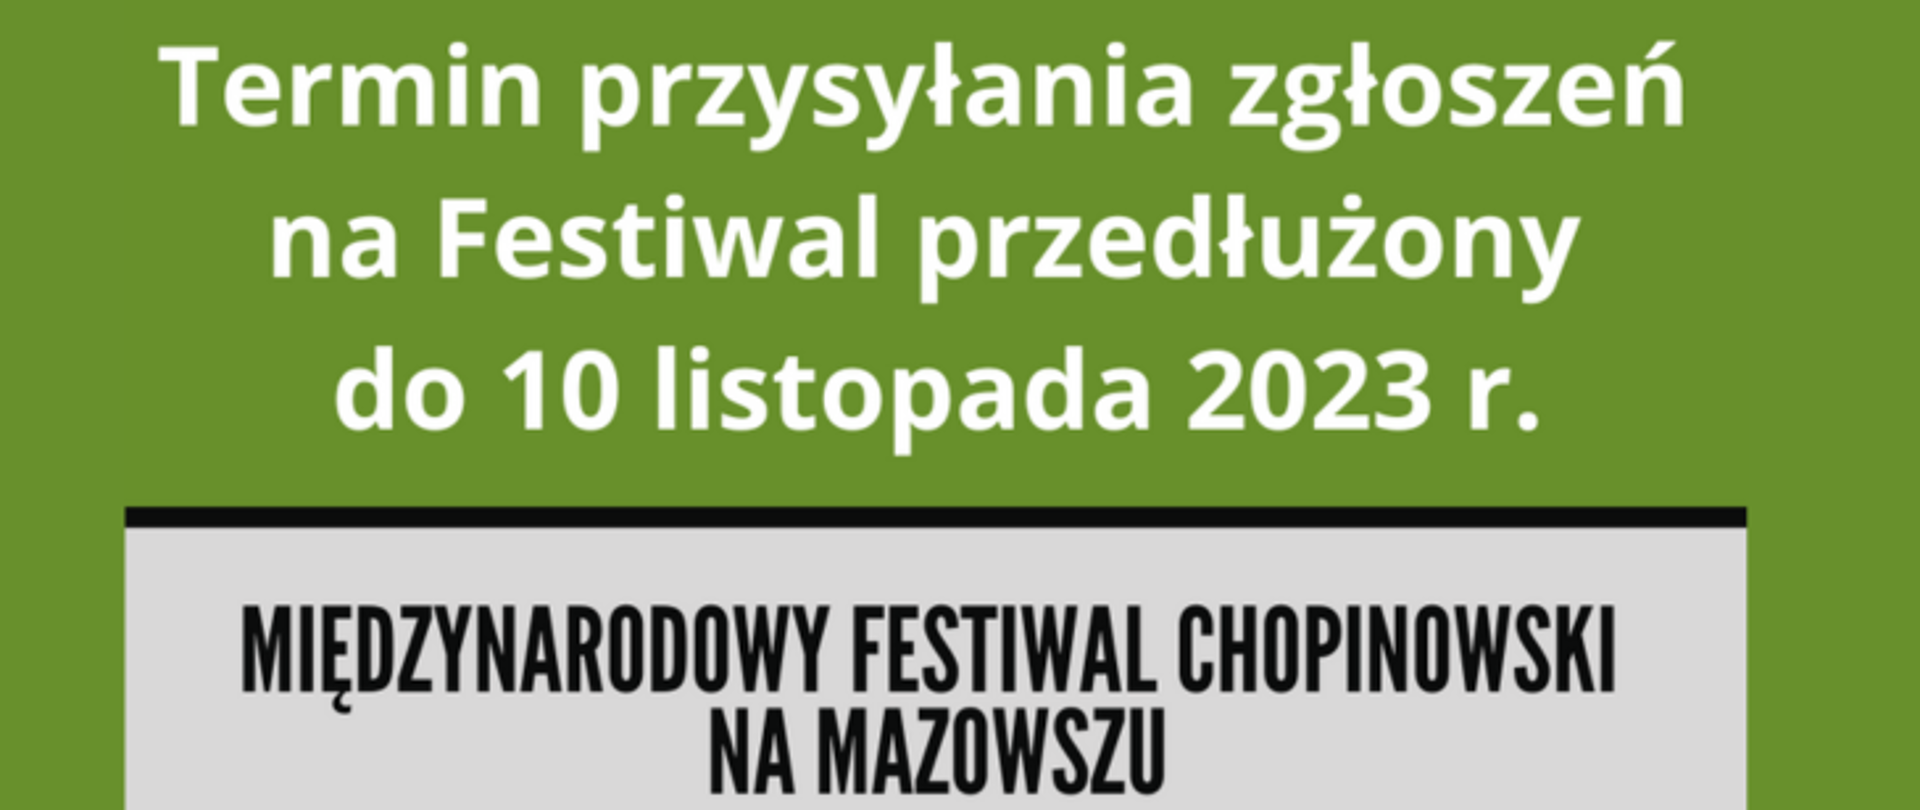 Na zielonym tle biały napis: Termin przysyłania zgłoszeń na Festiwal przesłużony do 10 listopada 2023 r.
Na dole na szarym tle czarny napis: Międzynarodowy Festiwal Chopinowski na Mazowszu.